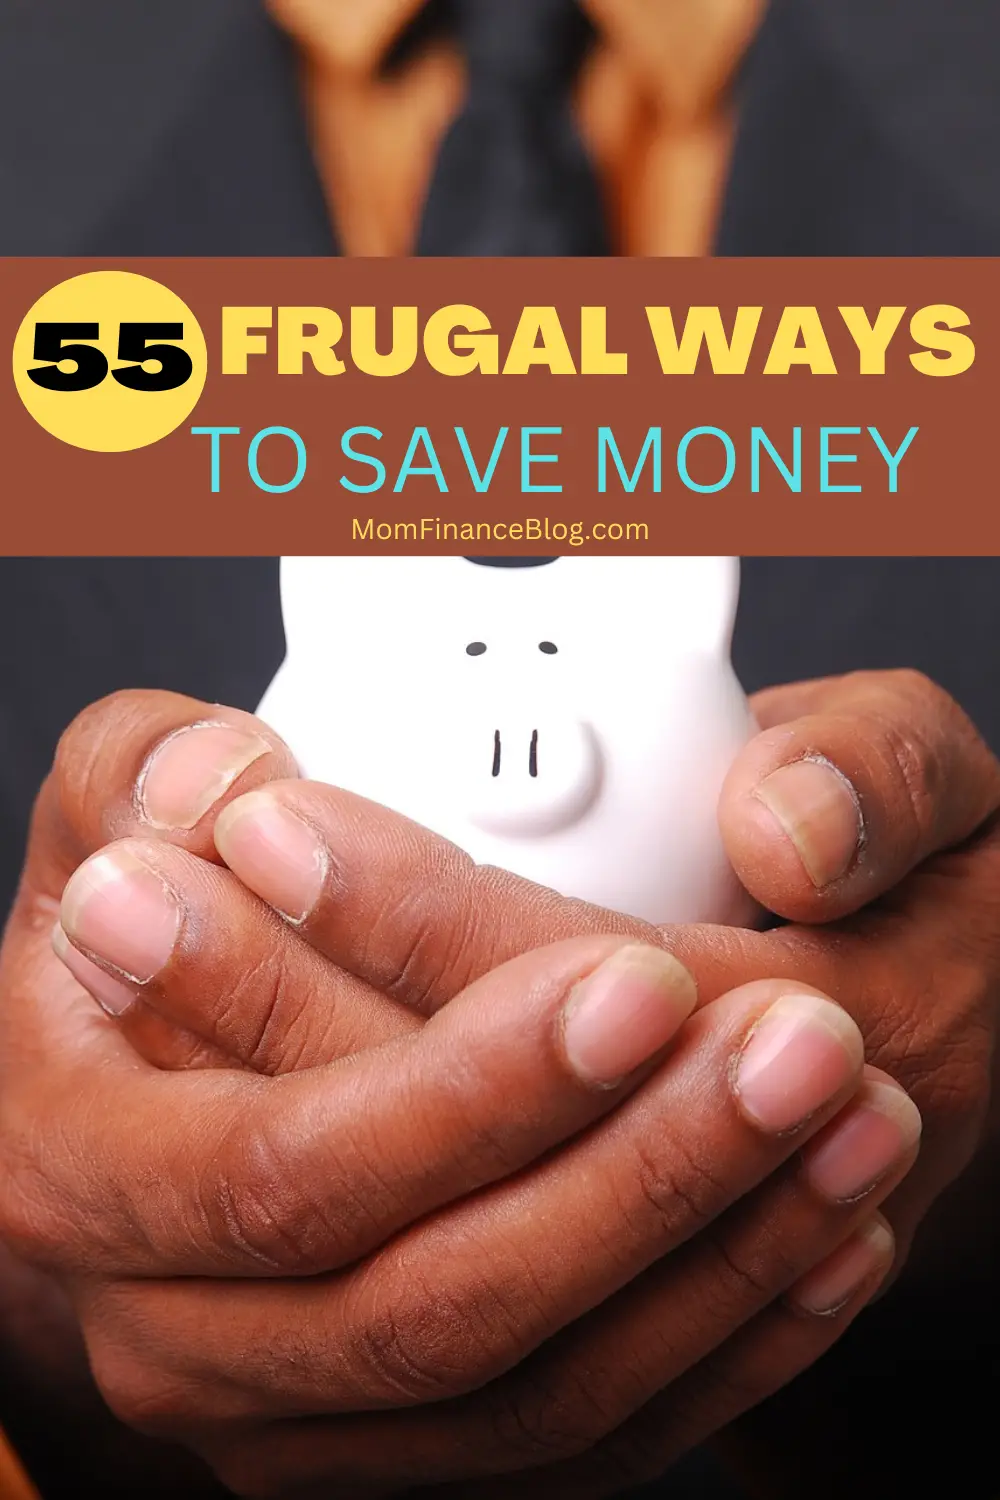 Frugal Ways to Save Money, Mom Finance Blog